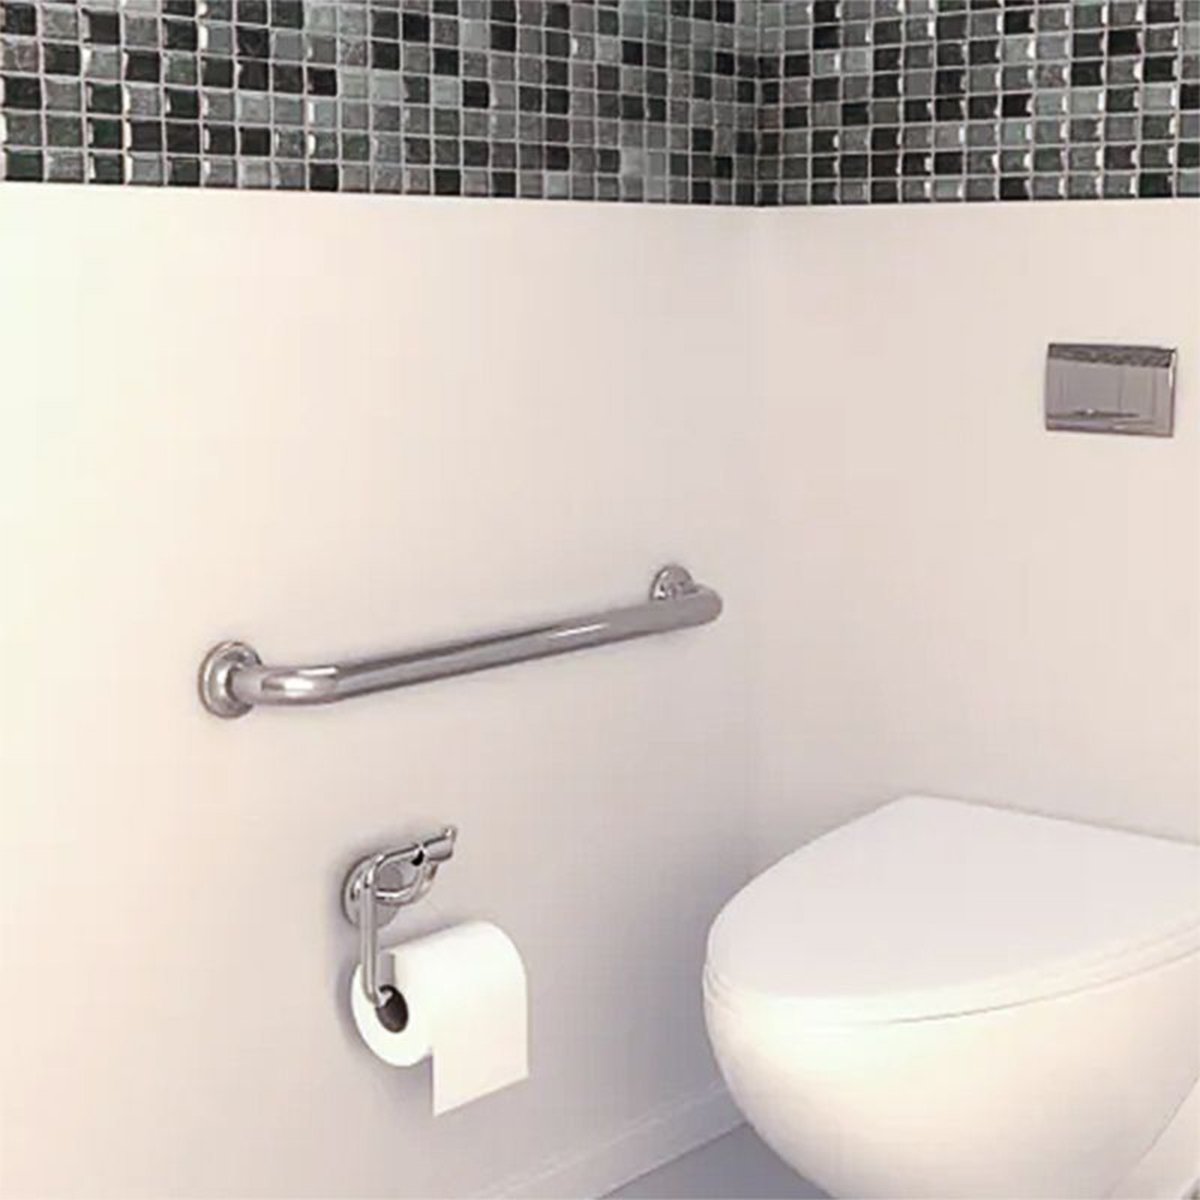 Alça de Apoio Inox 30cm Suporte Banheiro Box Acessibilidade Idoso Gestante Segurança Parede Apoio Re - 7